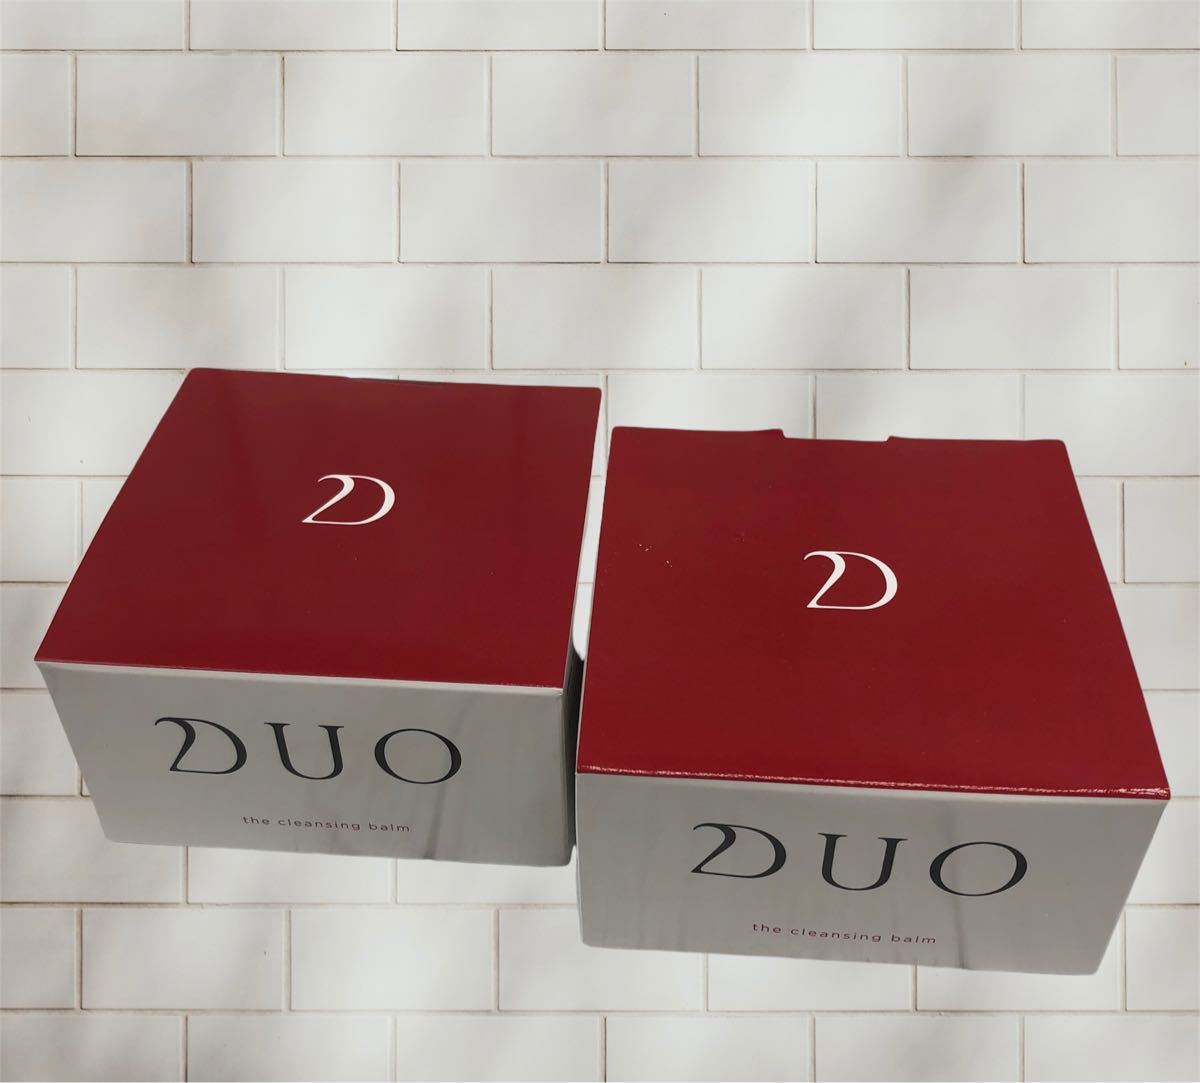 DUO デュオ ザ クレンジングバーム 90g 5個 スキンケア、基礎化粧品